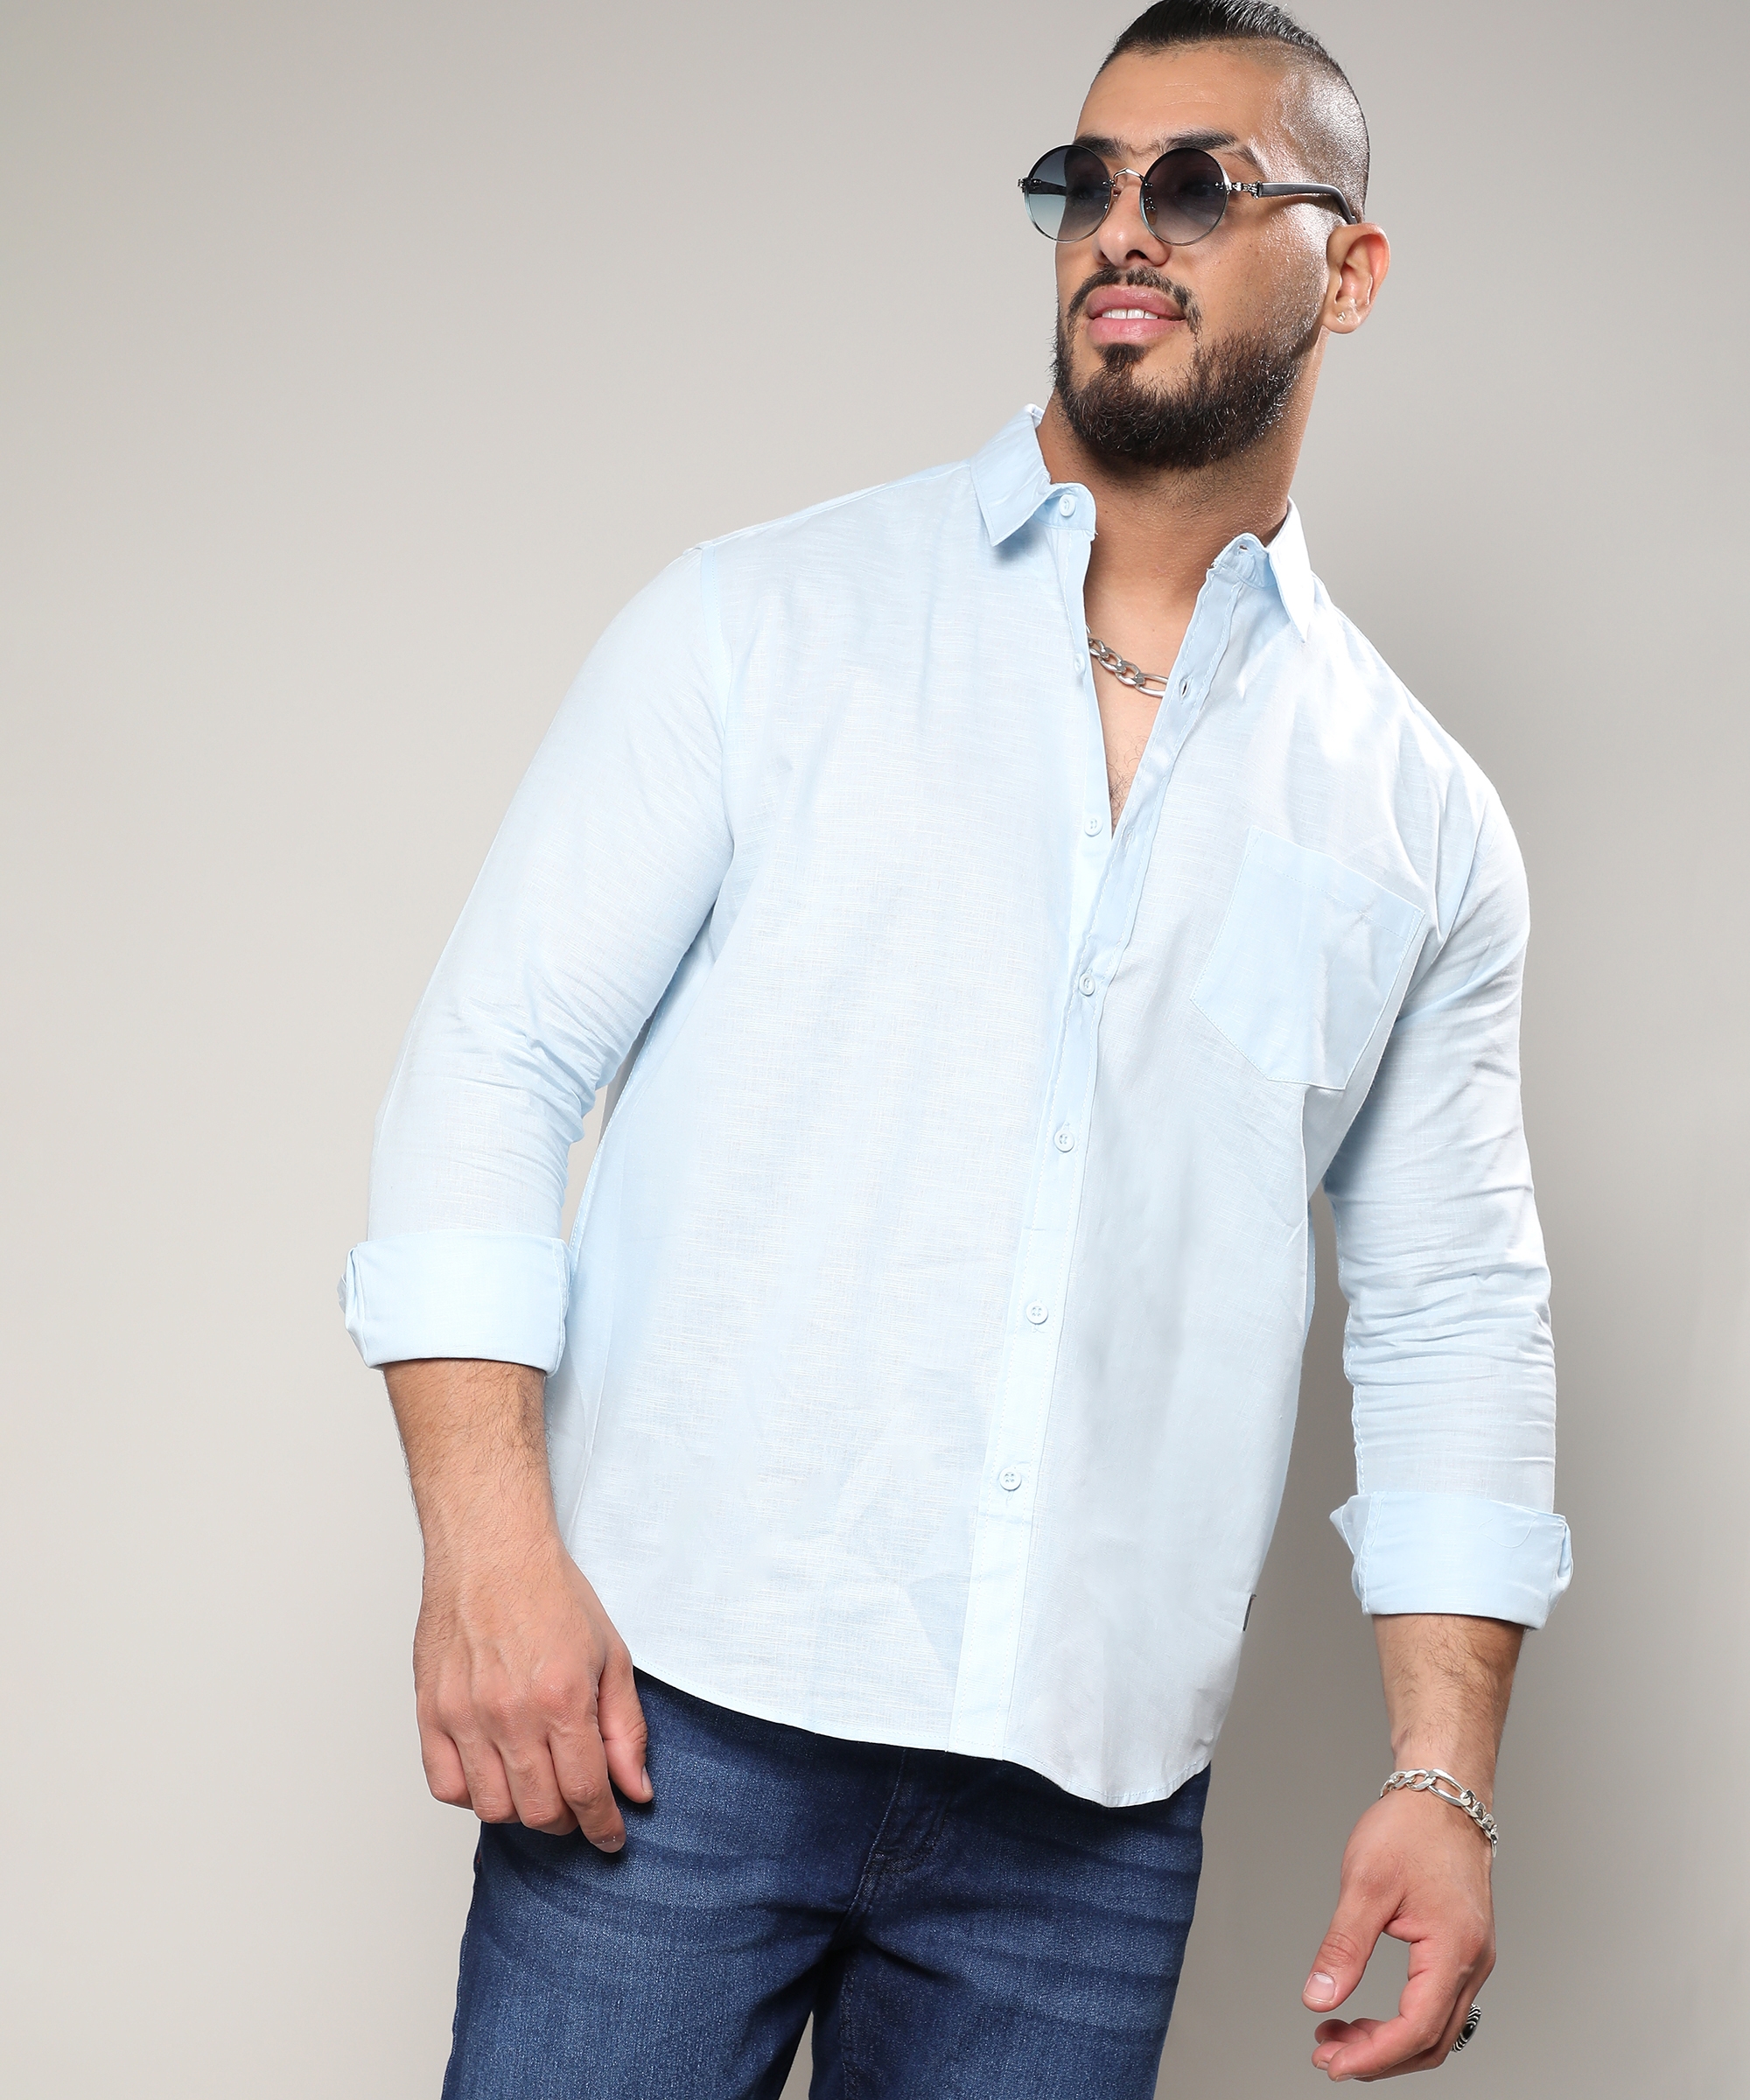 Instafab Plus | Men's Light Blue Classic Button- Up Shirt